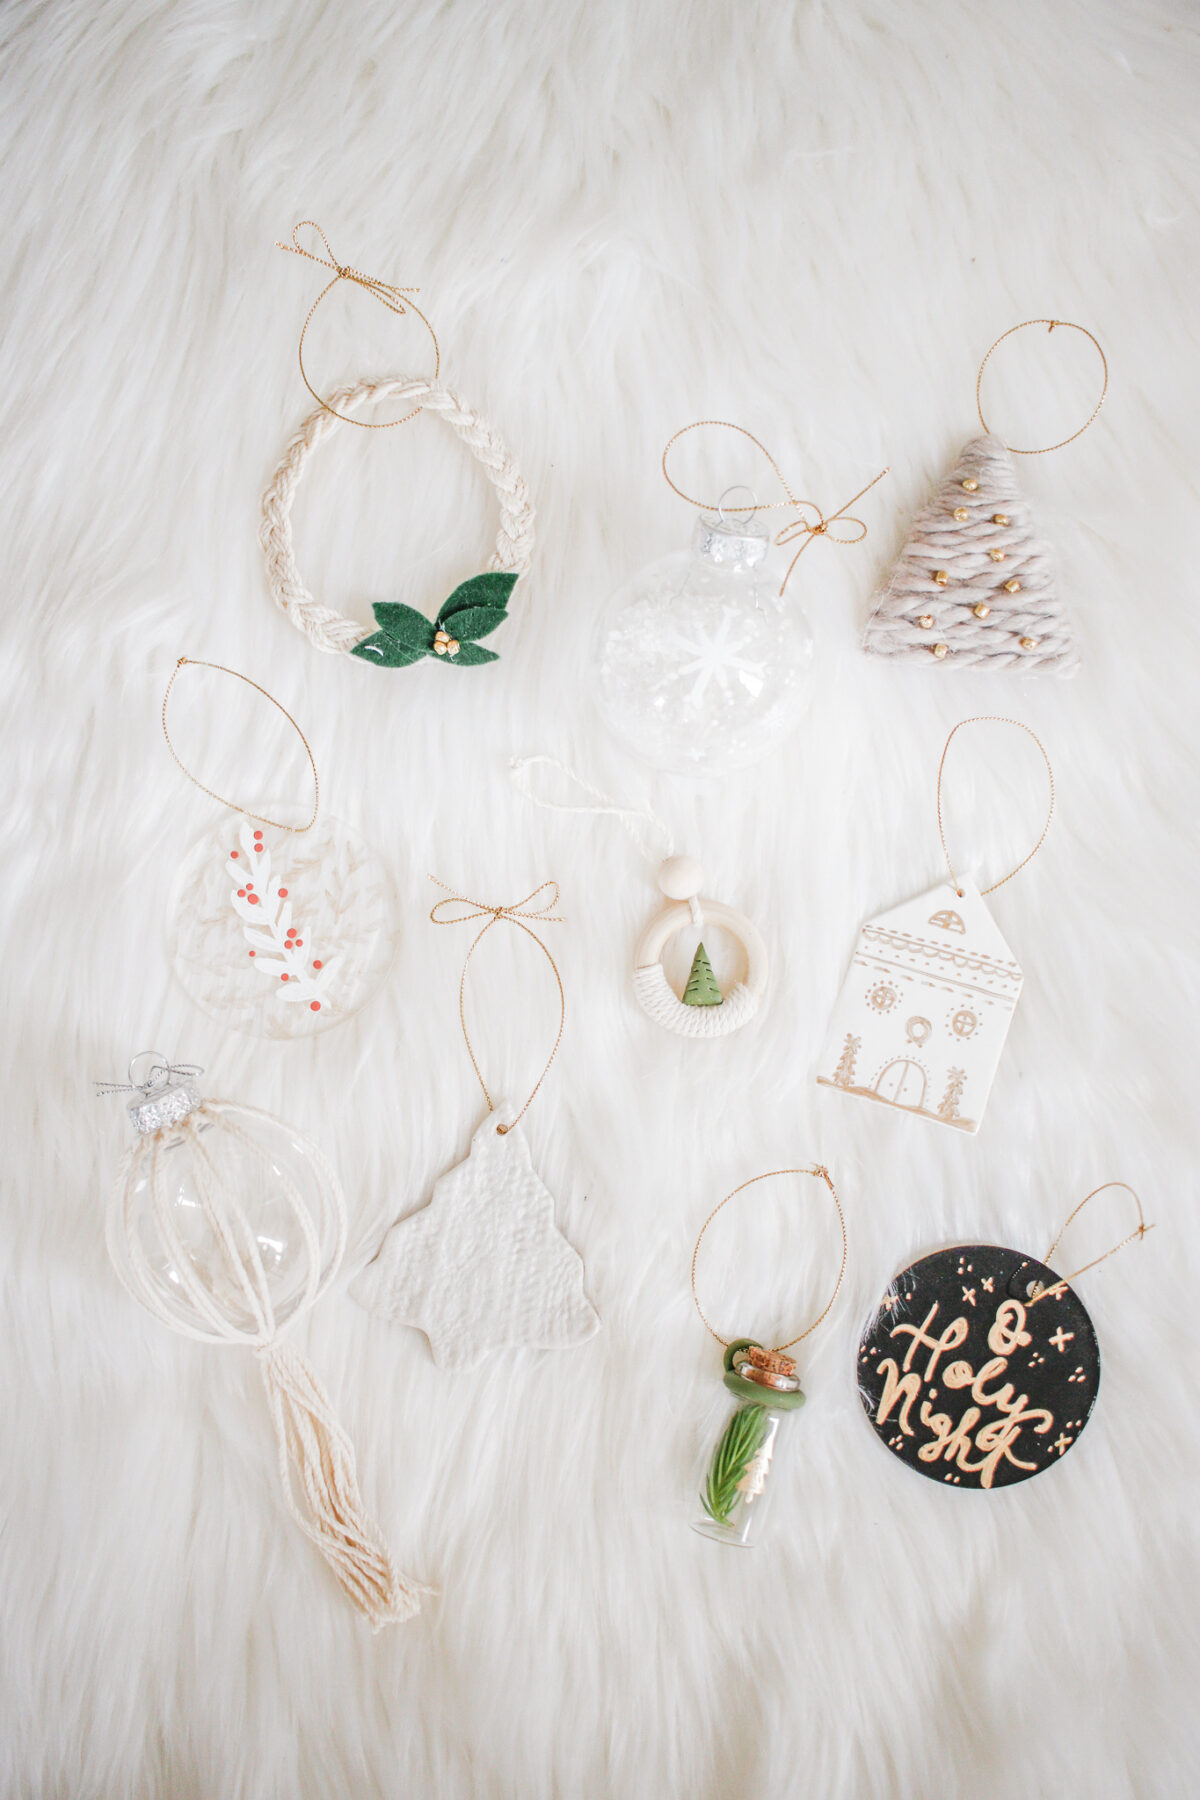 10 Easy DIY Ornaments